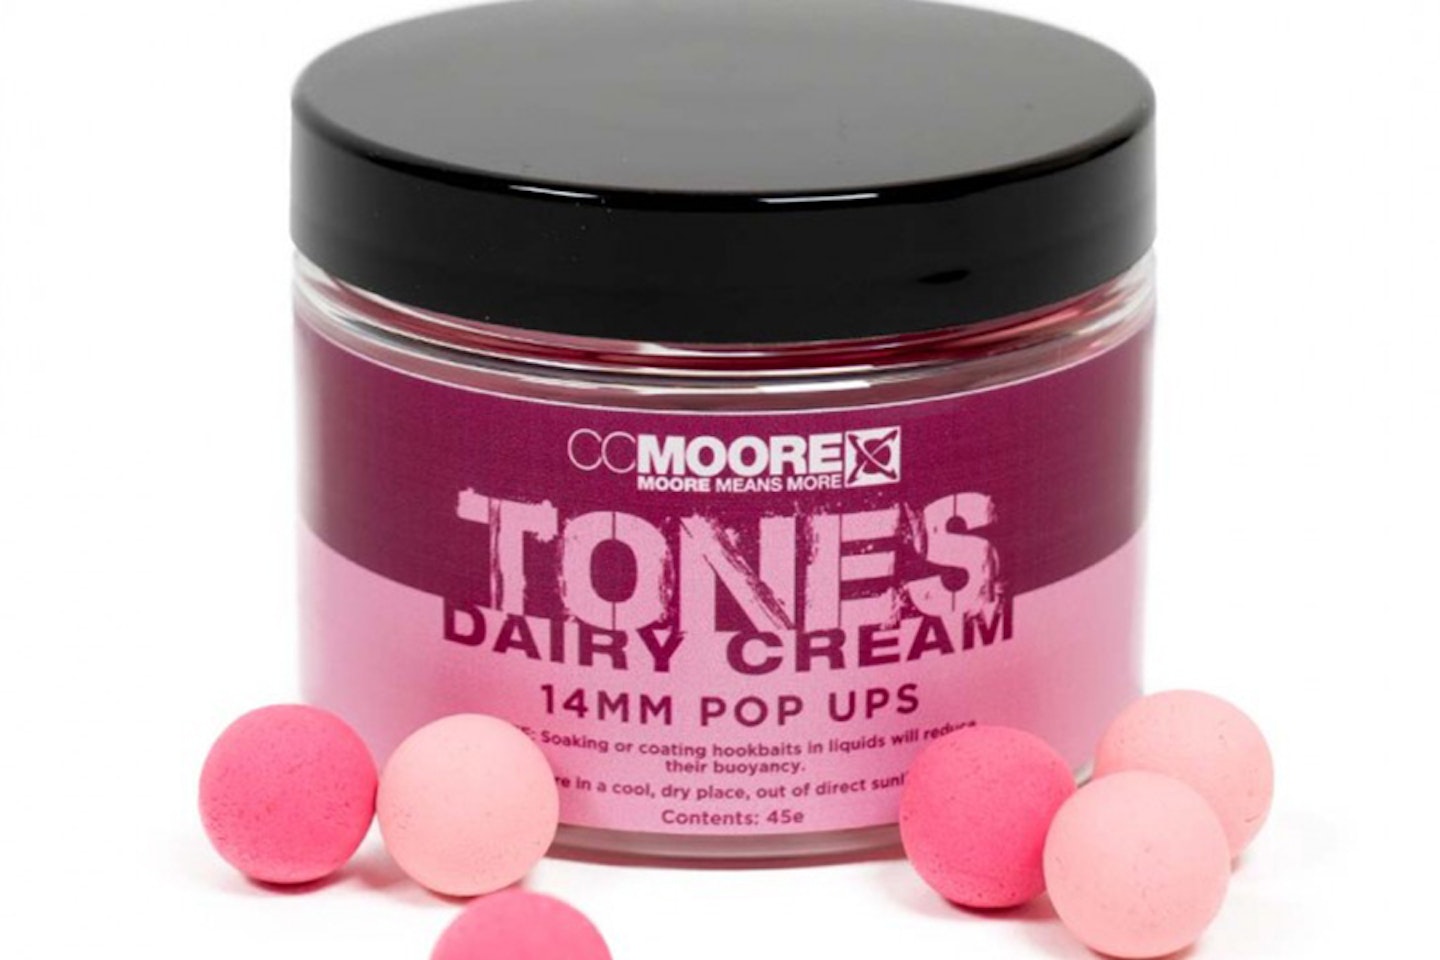 CC Moore Tones Dairy Cream Pop-ups